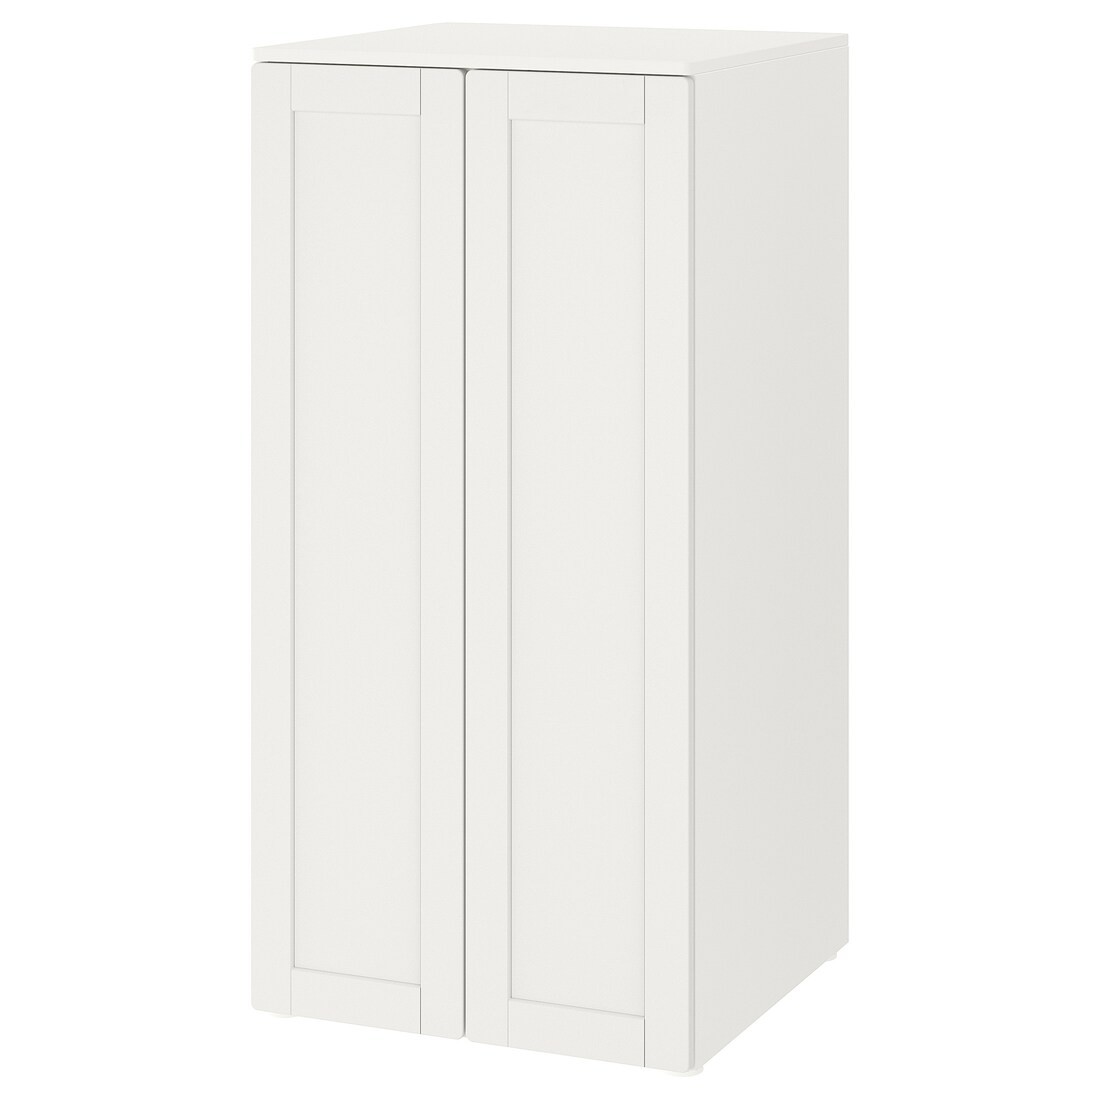 IKEA SMÅSTAD СМОСТАД / PLATSA ПЛАТСА Шкаф, белый белая рамка / с 3 полками, 60x57x123 см 59483355 594.833.55